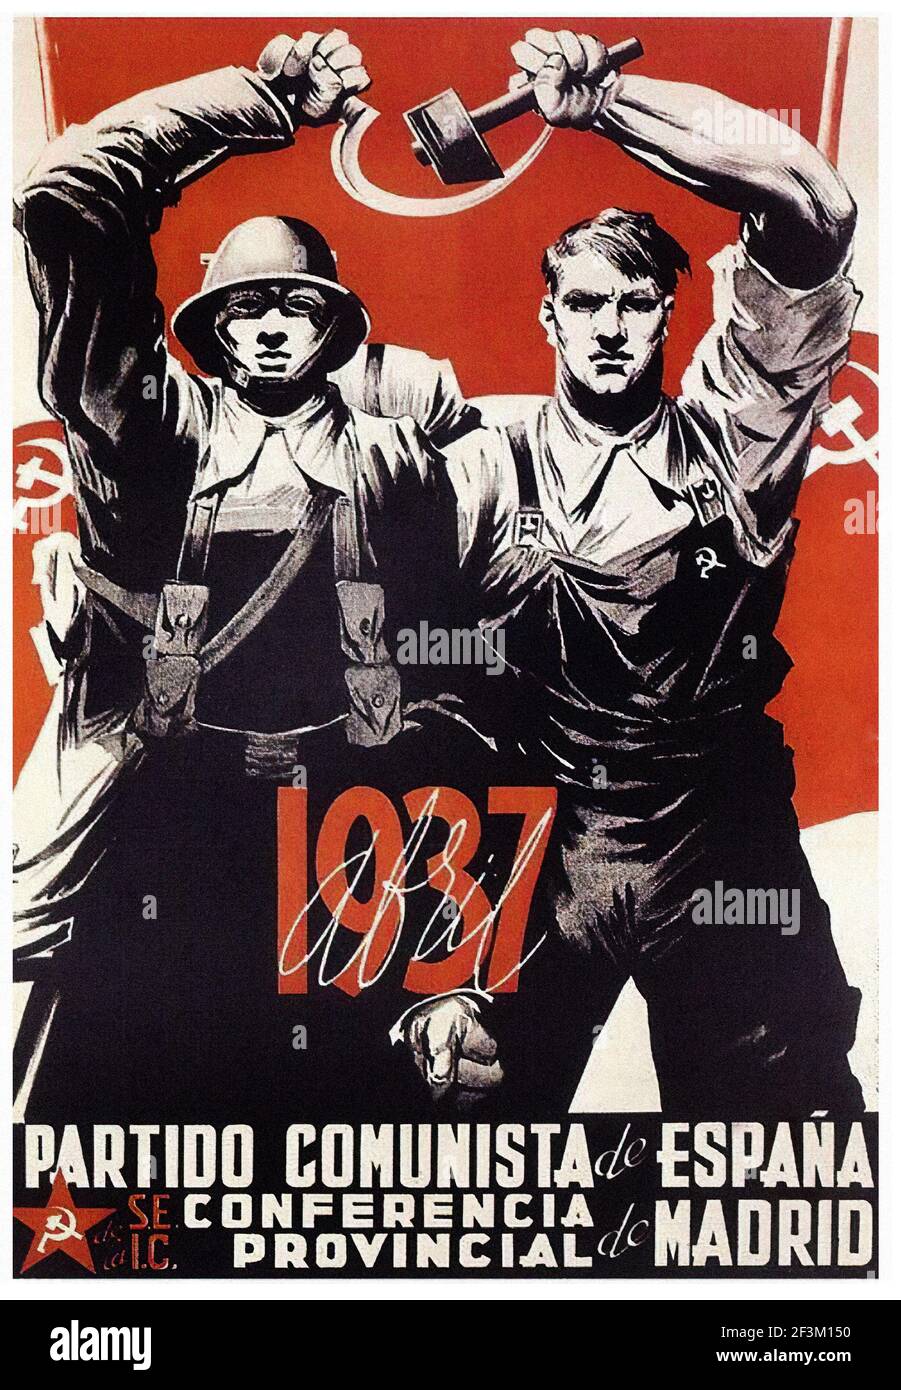 Affiche de propagande espagnole de la guerre de Sécession. Conférence provinciale de Madrid, Parti communiste d'Espagne, 1937. Banque D'Images